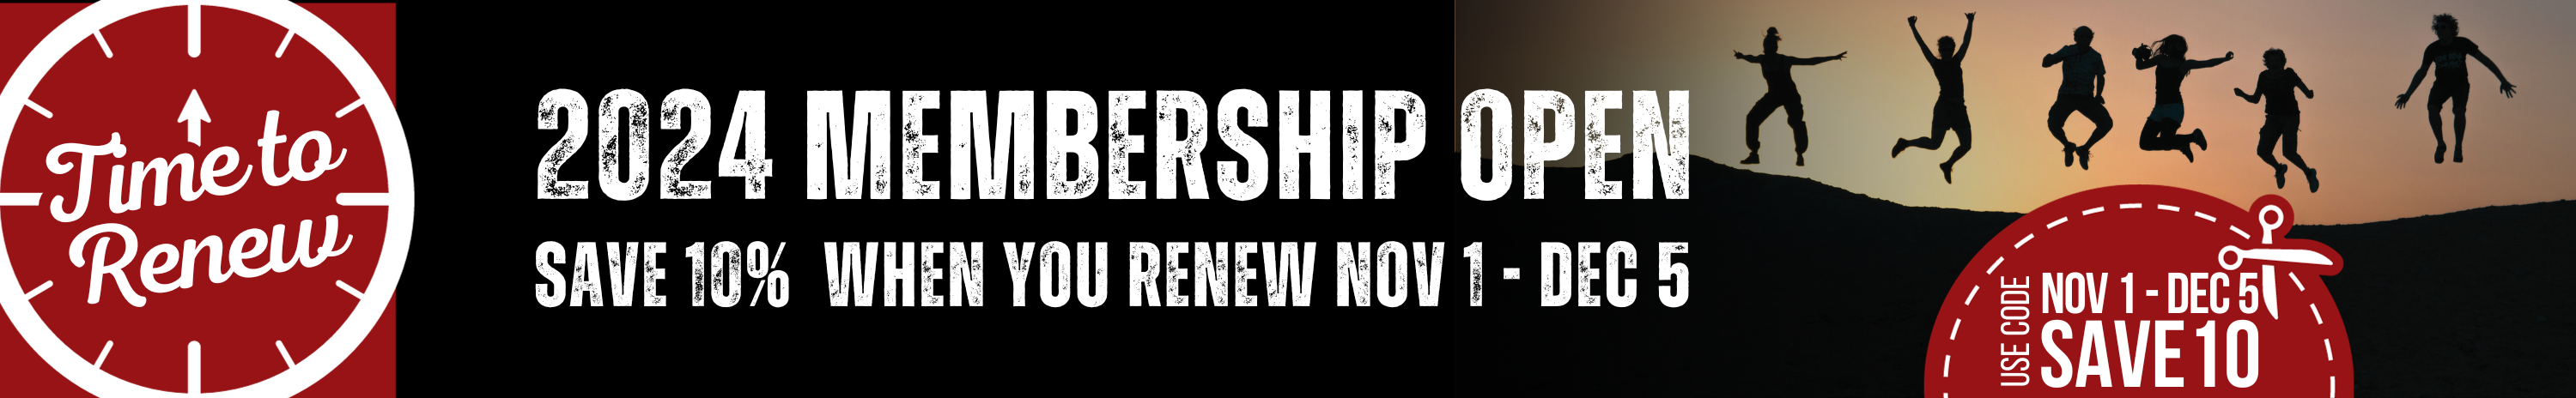 renew your membership